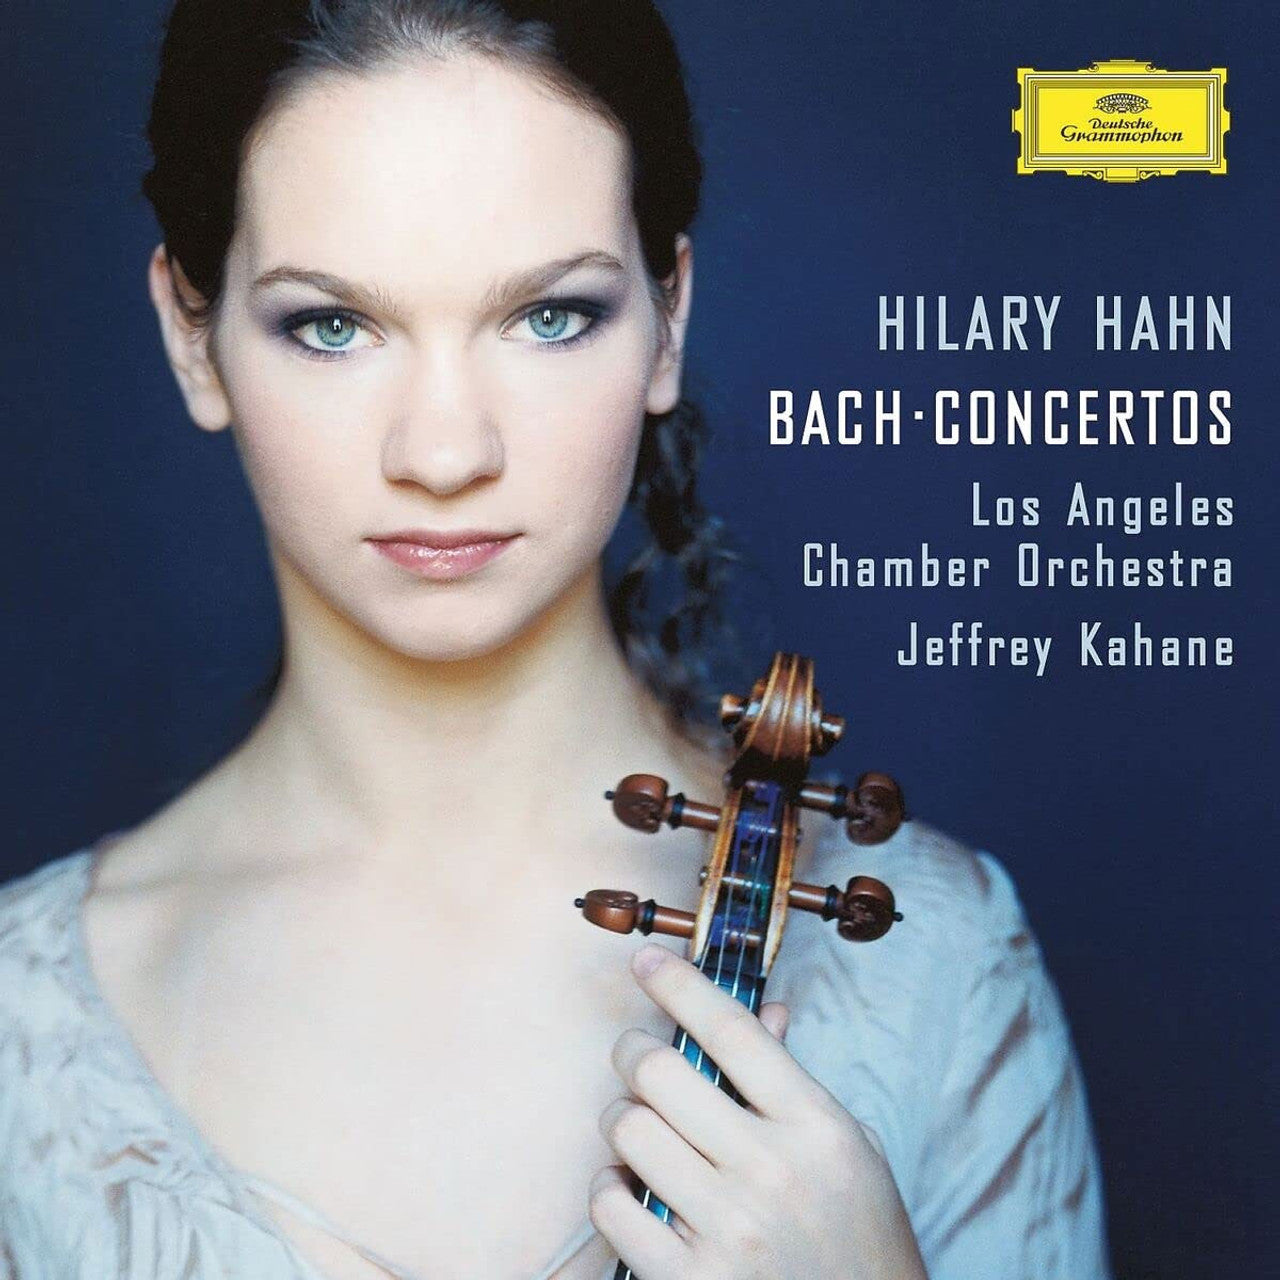 Hilary Hahn - Hilary Hahn Bach: Concertos